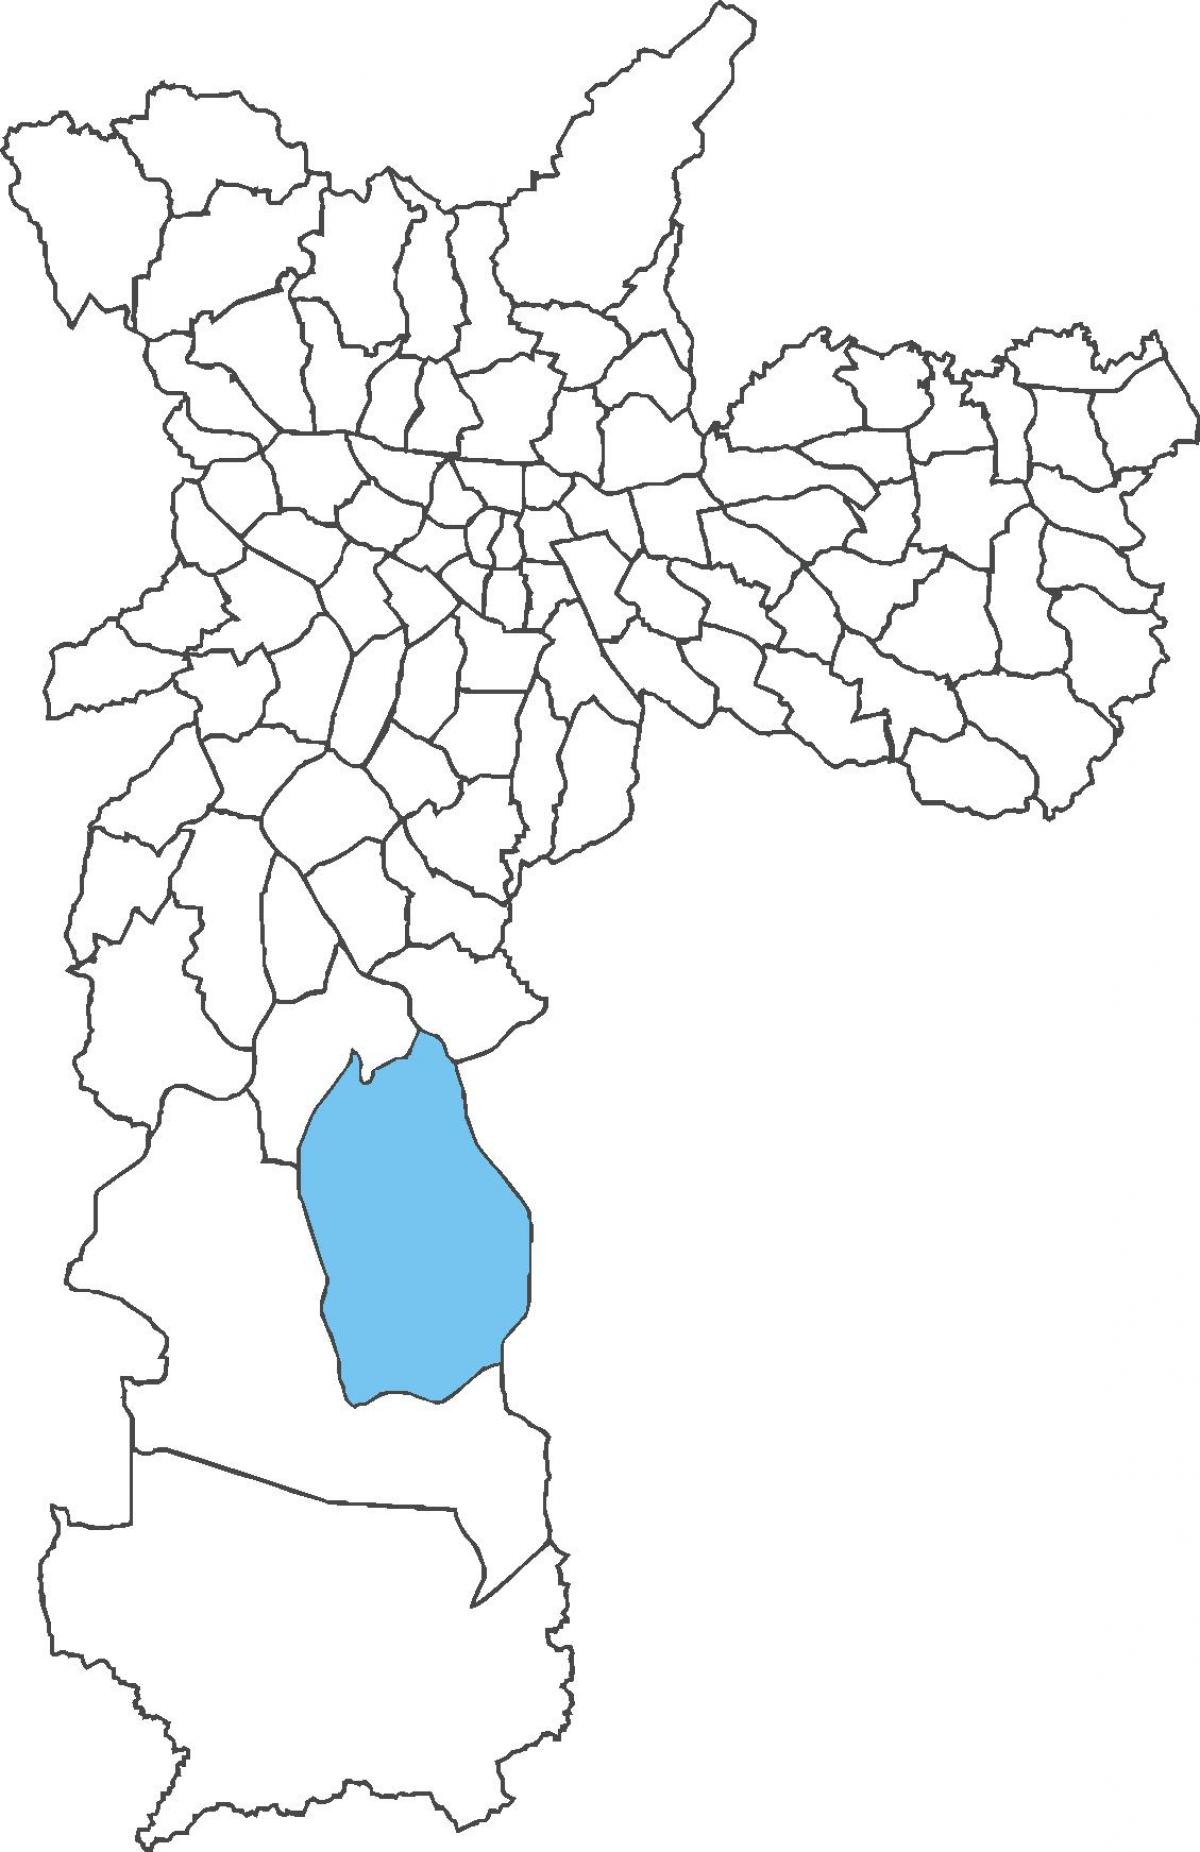 Grajaú bölge haritası